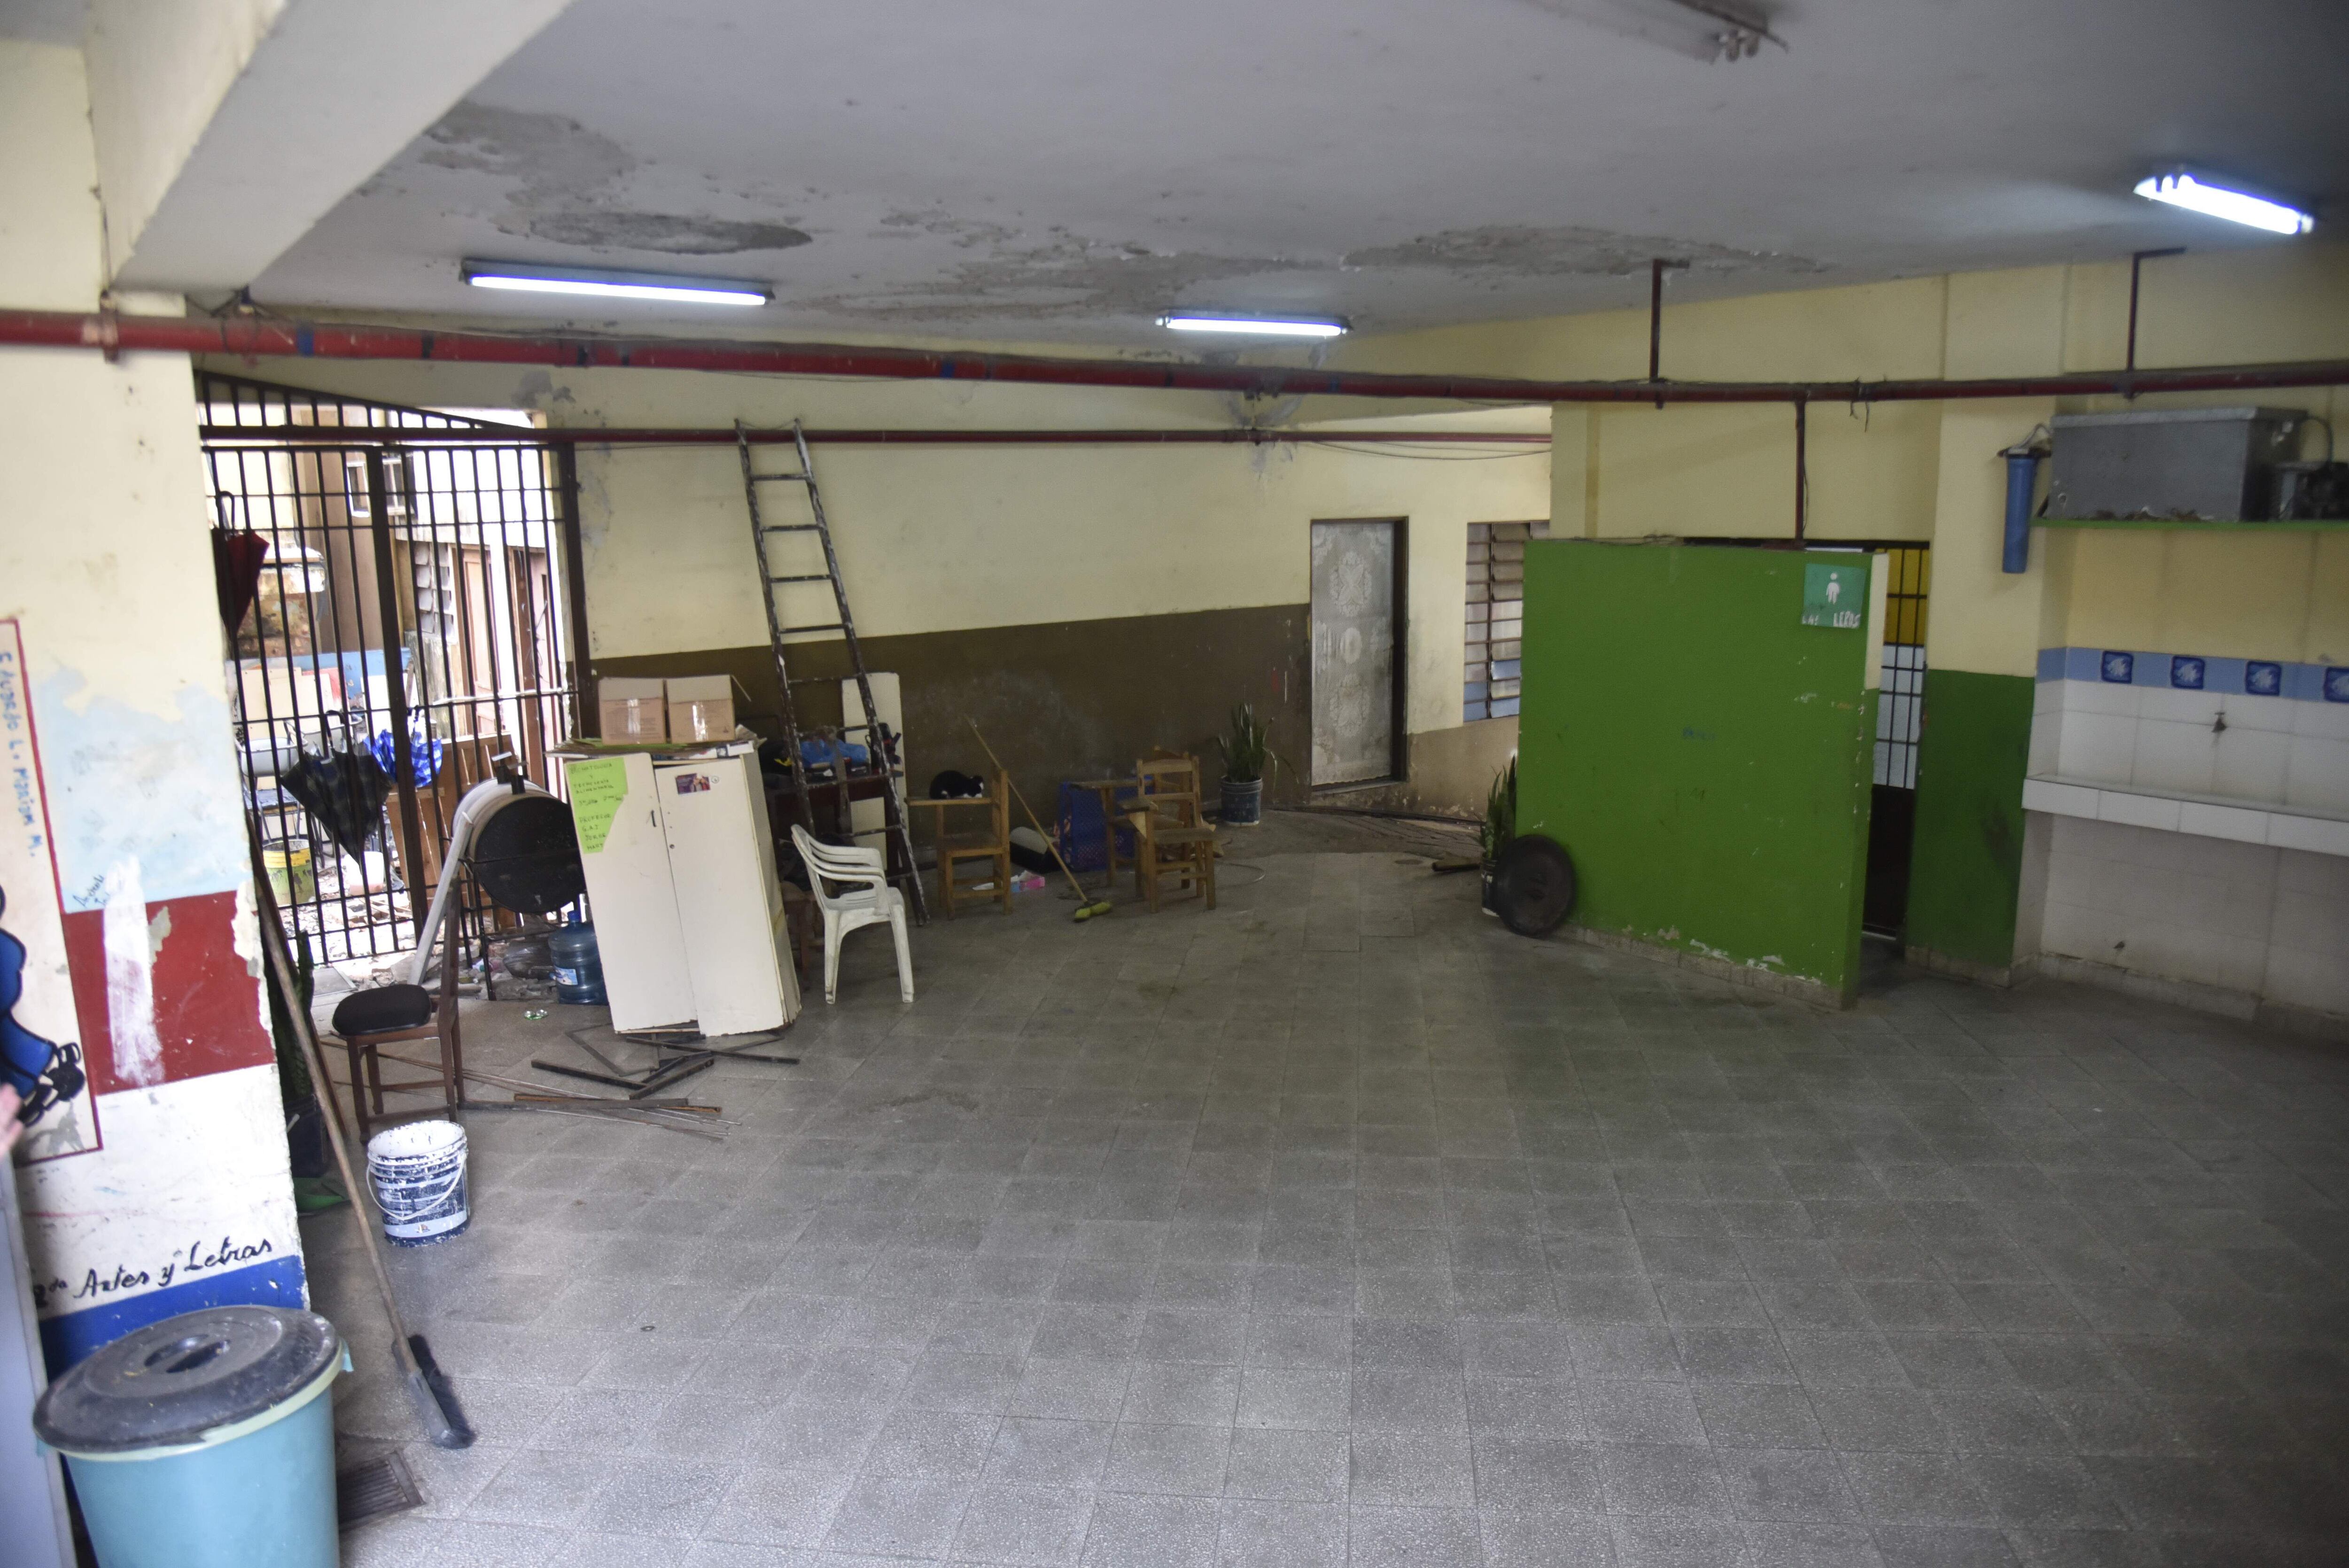 En el Colegio Asunción Escalada hay todo un pabellón clausurado por peligro de derrumbre. Las clases seguirán híbridas, según informaron a los padres.